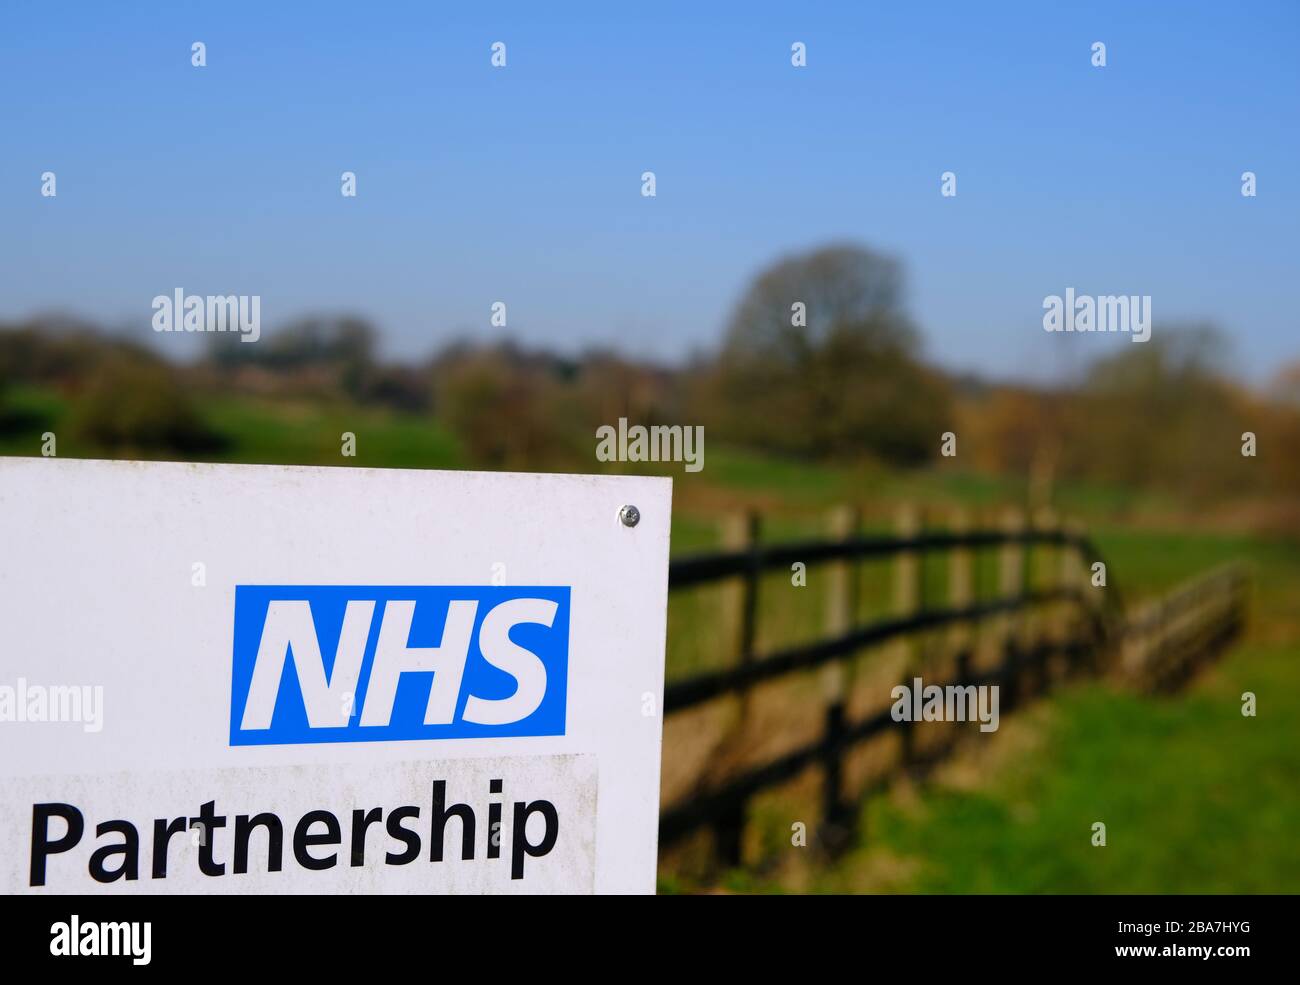 NHS palabra de asociación vista en una señal de carretera con fondo de campo borrosa. Foto de stock